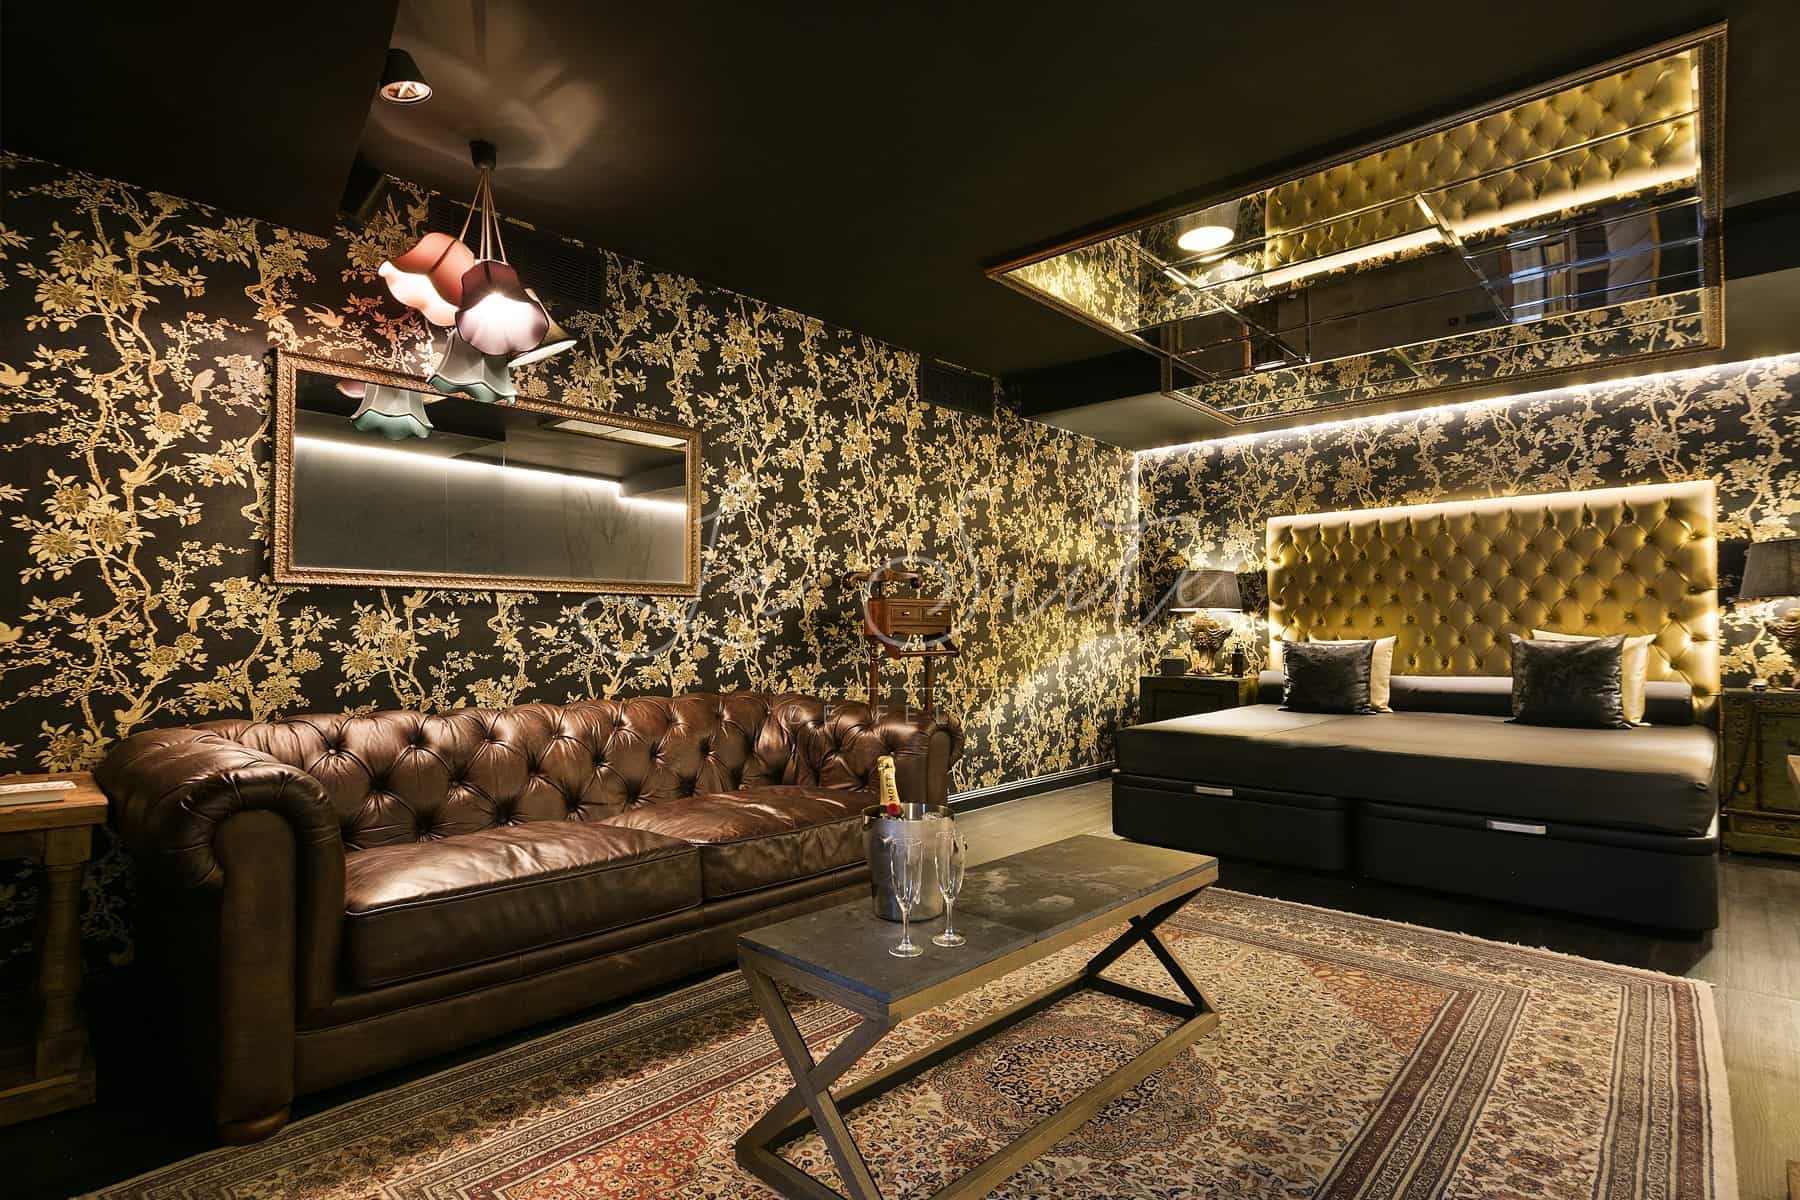 Suite Lujuria, décorée avec des finitions en or et en bois, meublée avec la plus grande qualité à La Suite, Barcelone